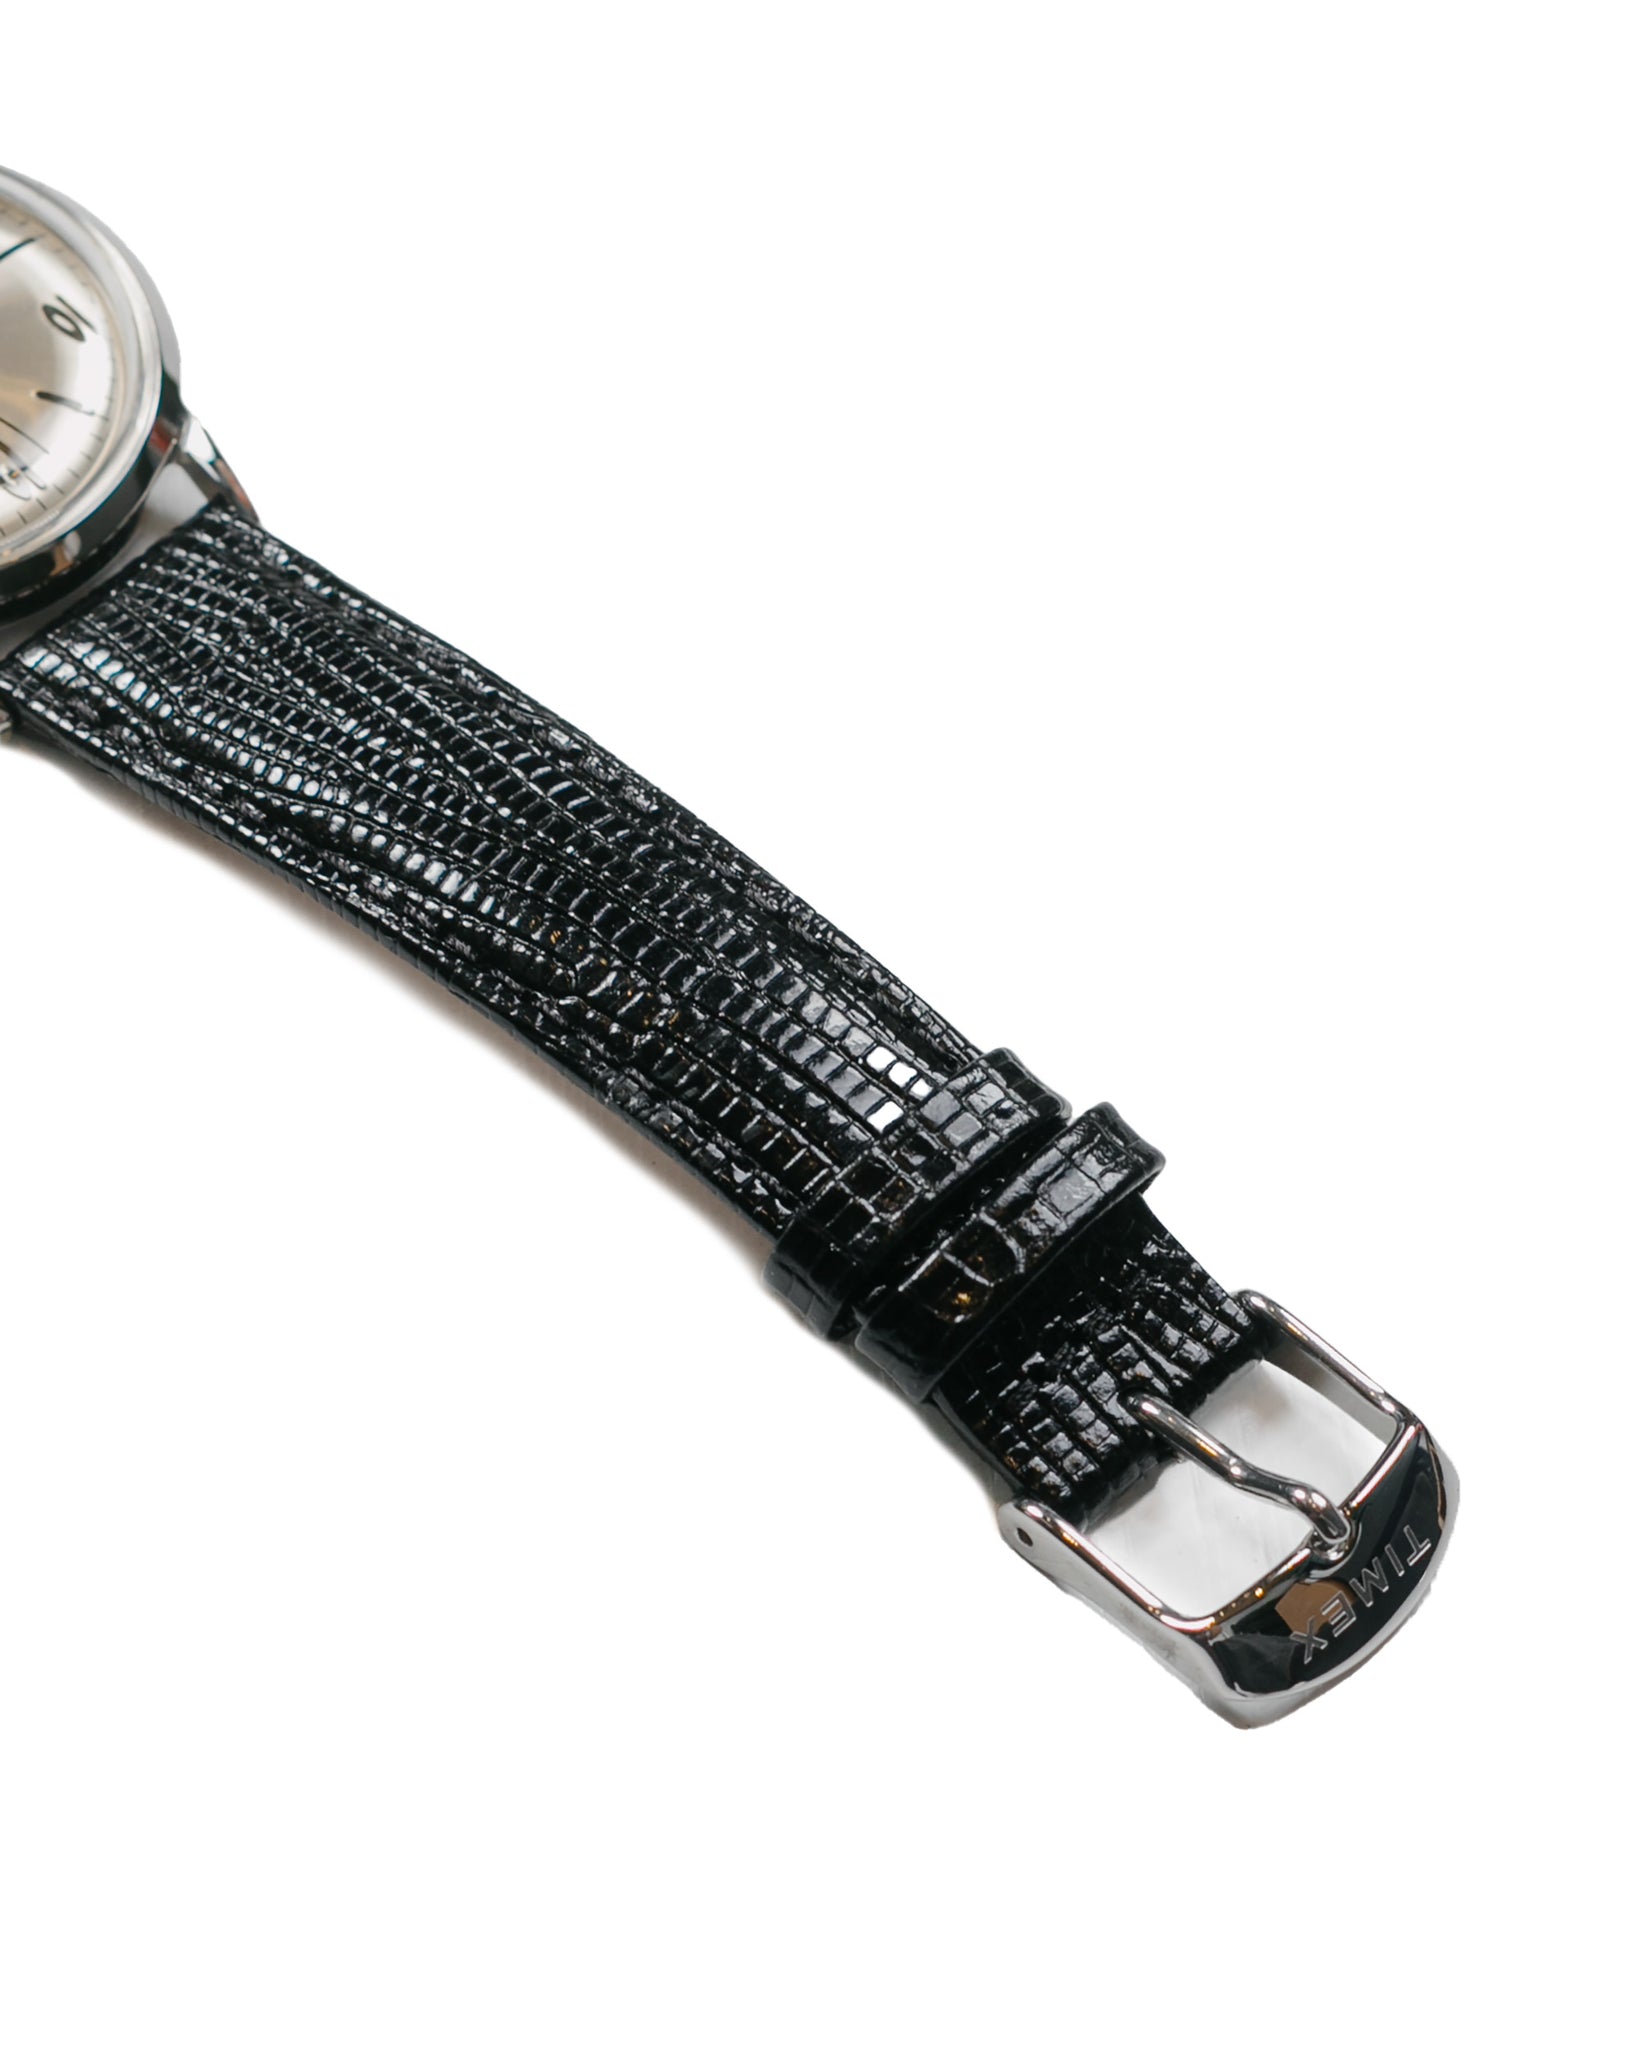 Timex Marlin Hand-Wound 34mm 